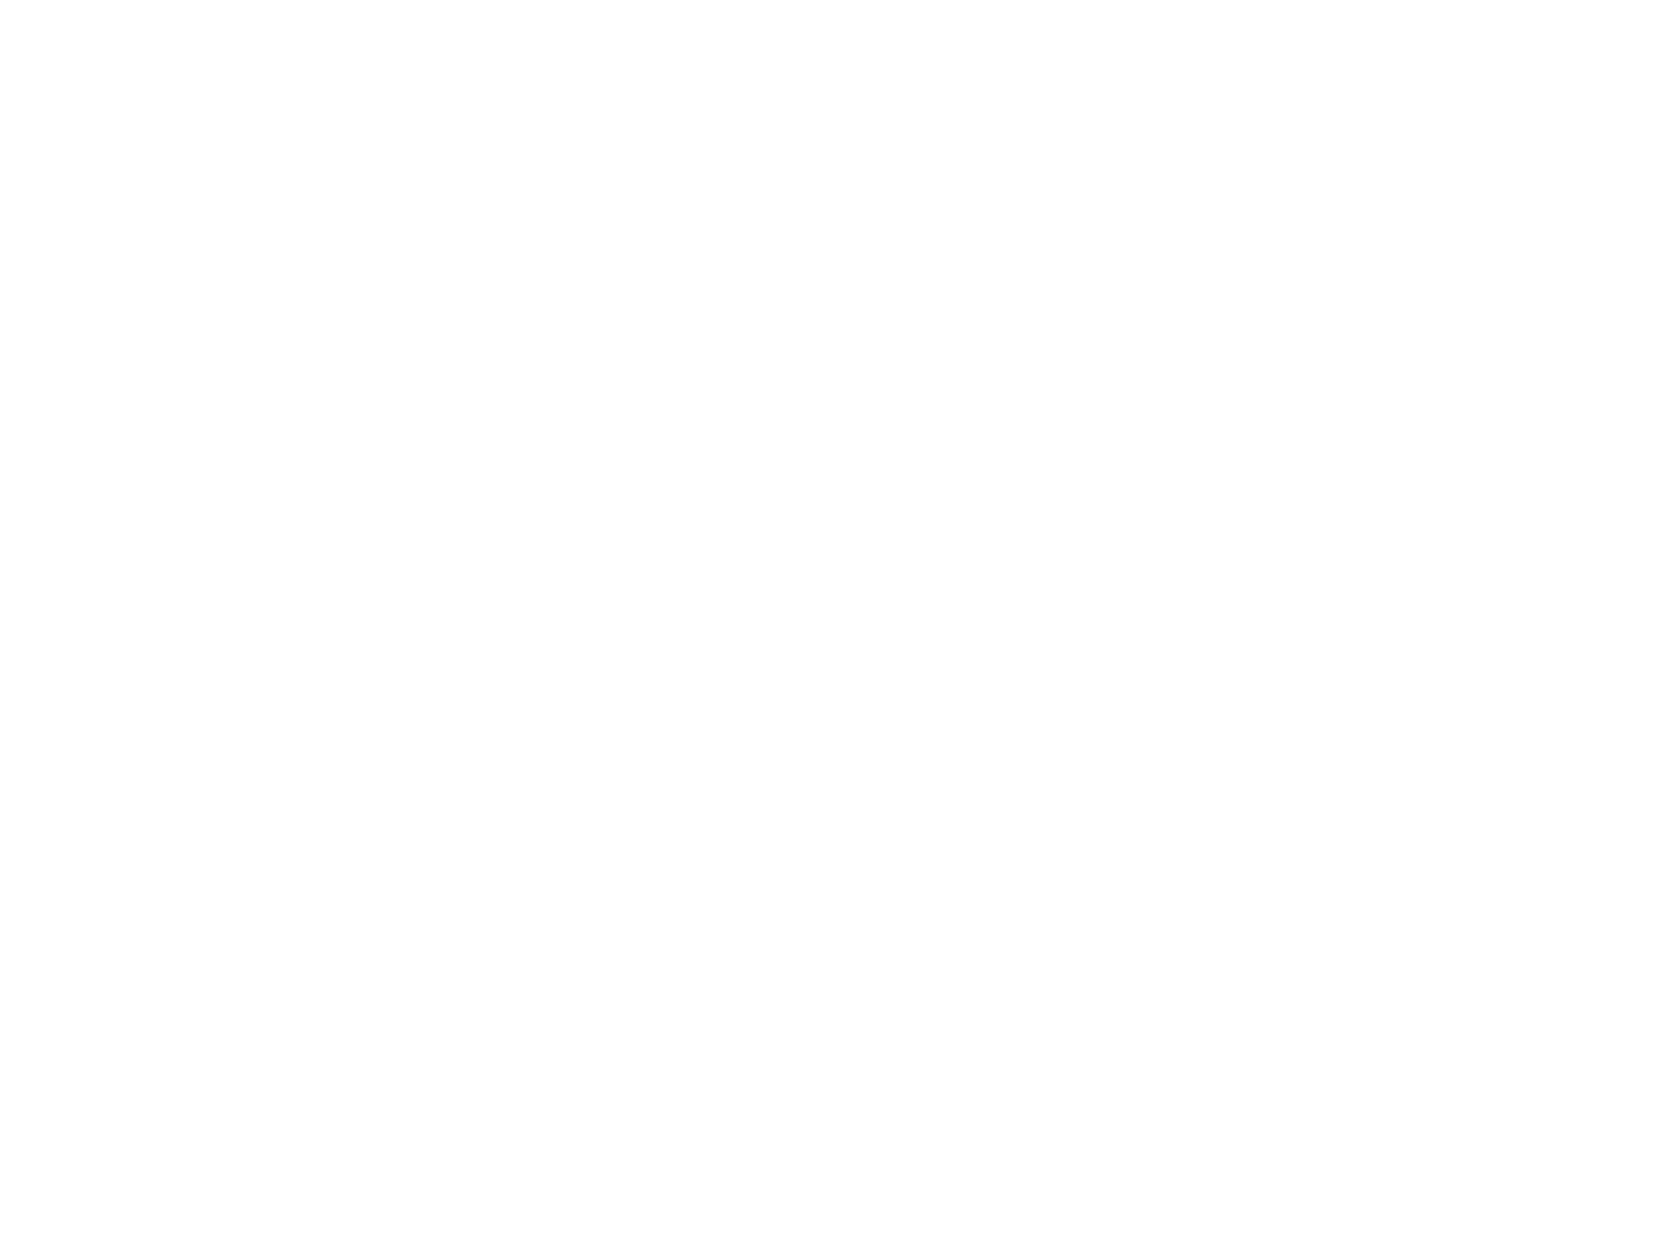 Настольные часы на лампах ИН-14. Высота цифр 18 мм. Корпус вырезан из красной африканской древесины Падук